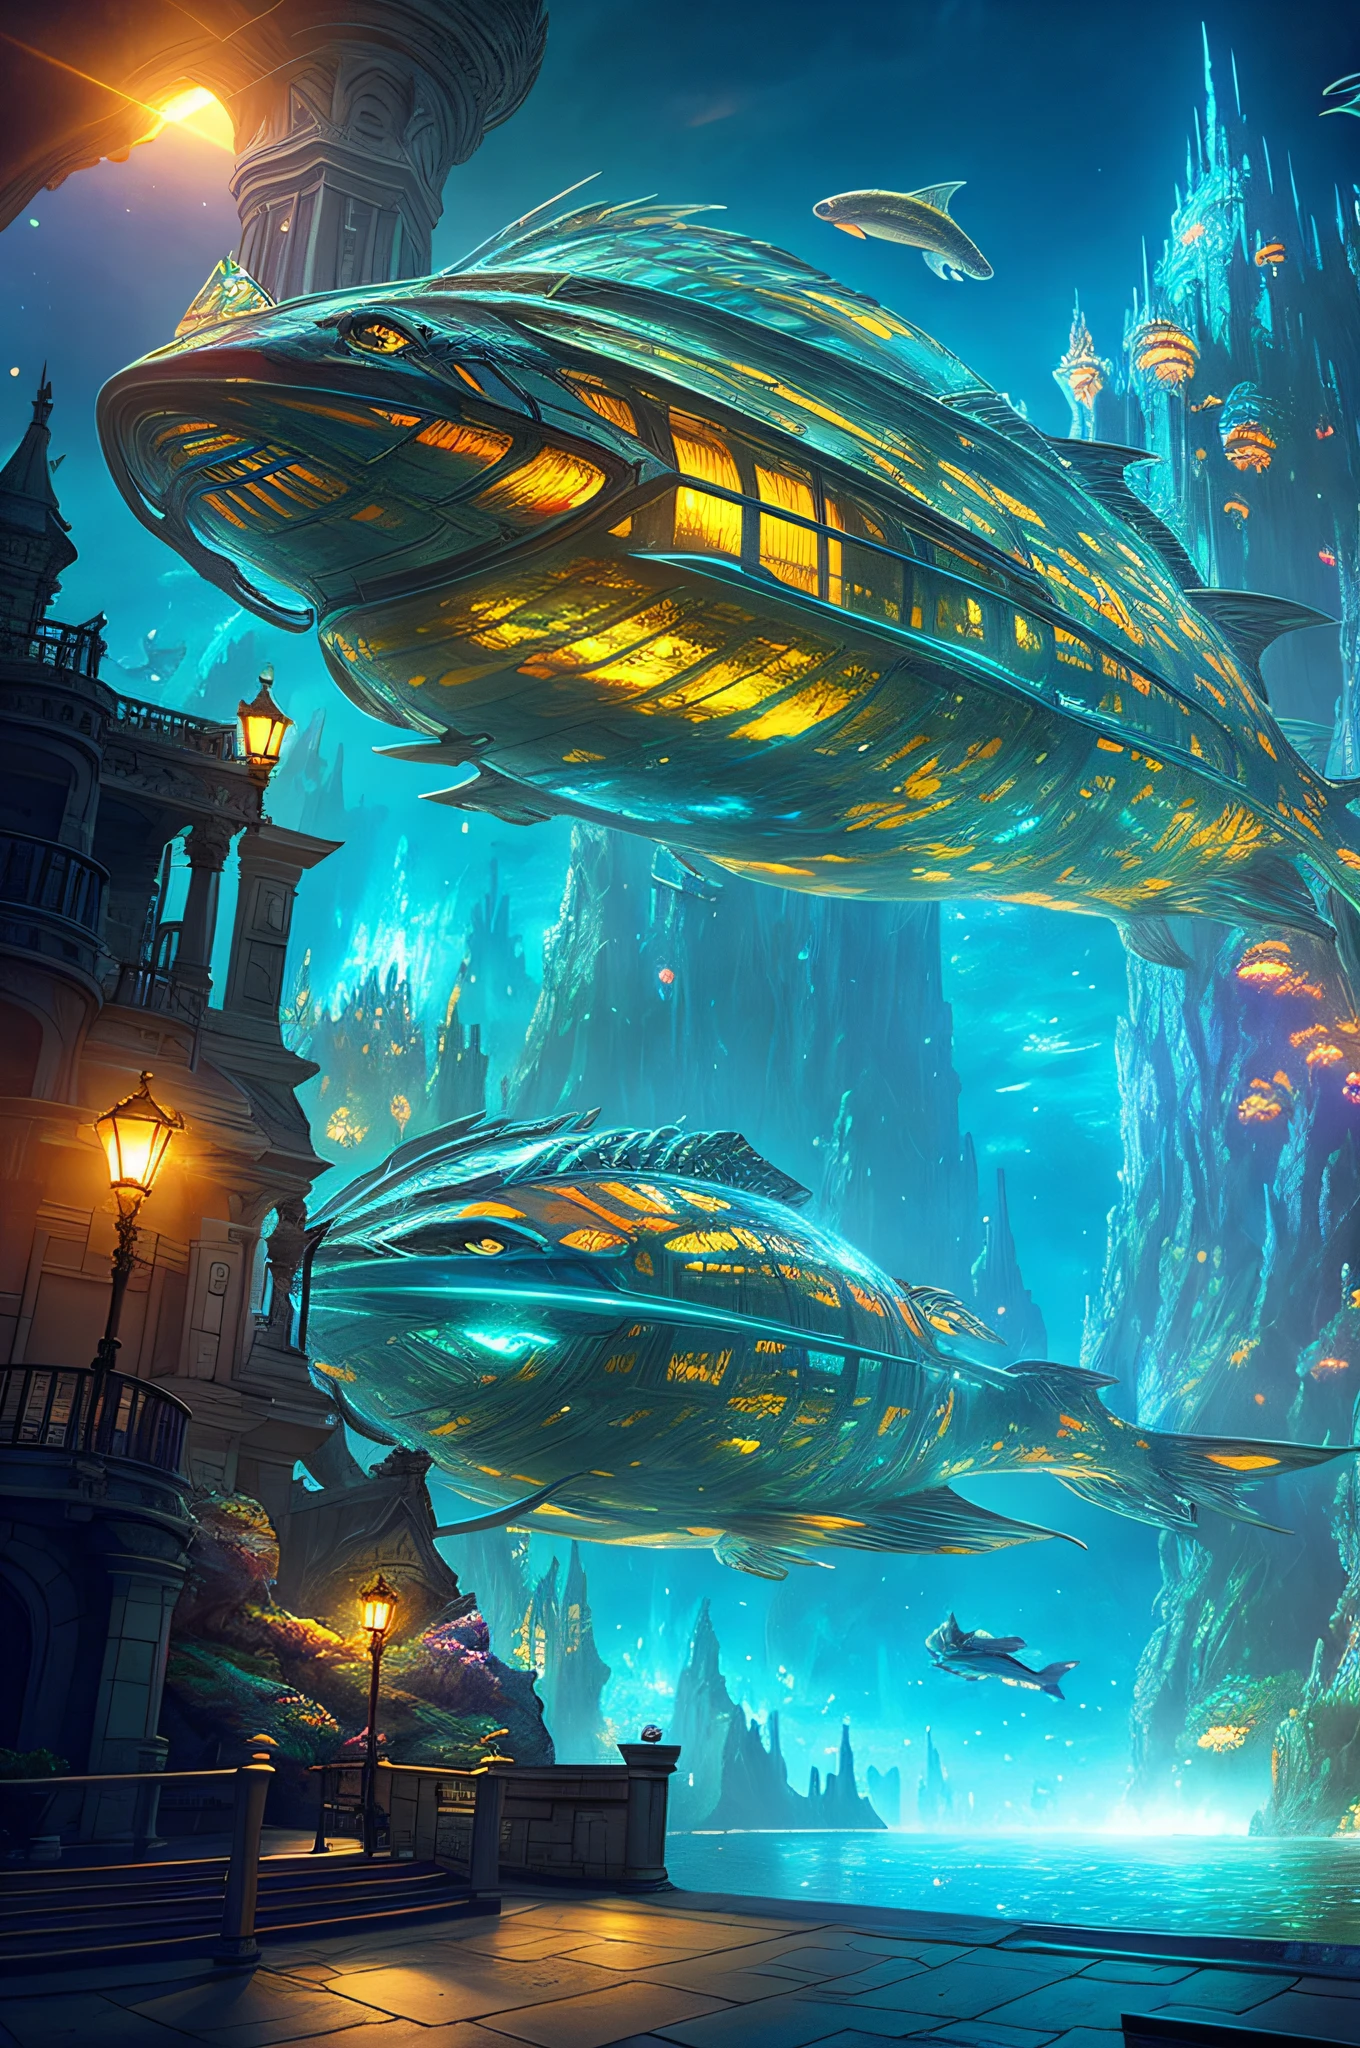 Fantasy-Konzeptkunst, ein transparentes Gebäude als riesiges Aquarium mit Fischen in der Nacht, schöne Lichtdekoration, Weitwinkelobjektiv, 8k-Octan-Rendering, Realistisch, epische Aufnahmen, Filmbeleuchtung, detaillierte Architektur, detaillierter Fisch, Brillant und farbenfroh